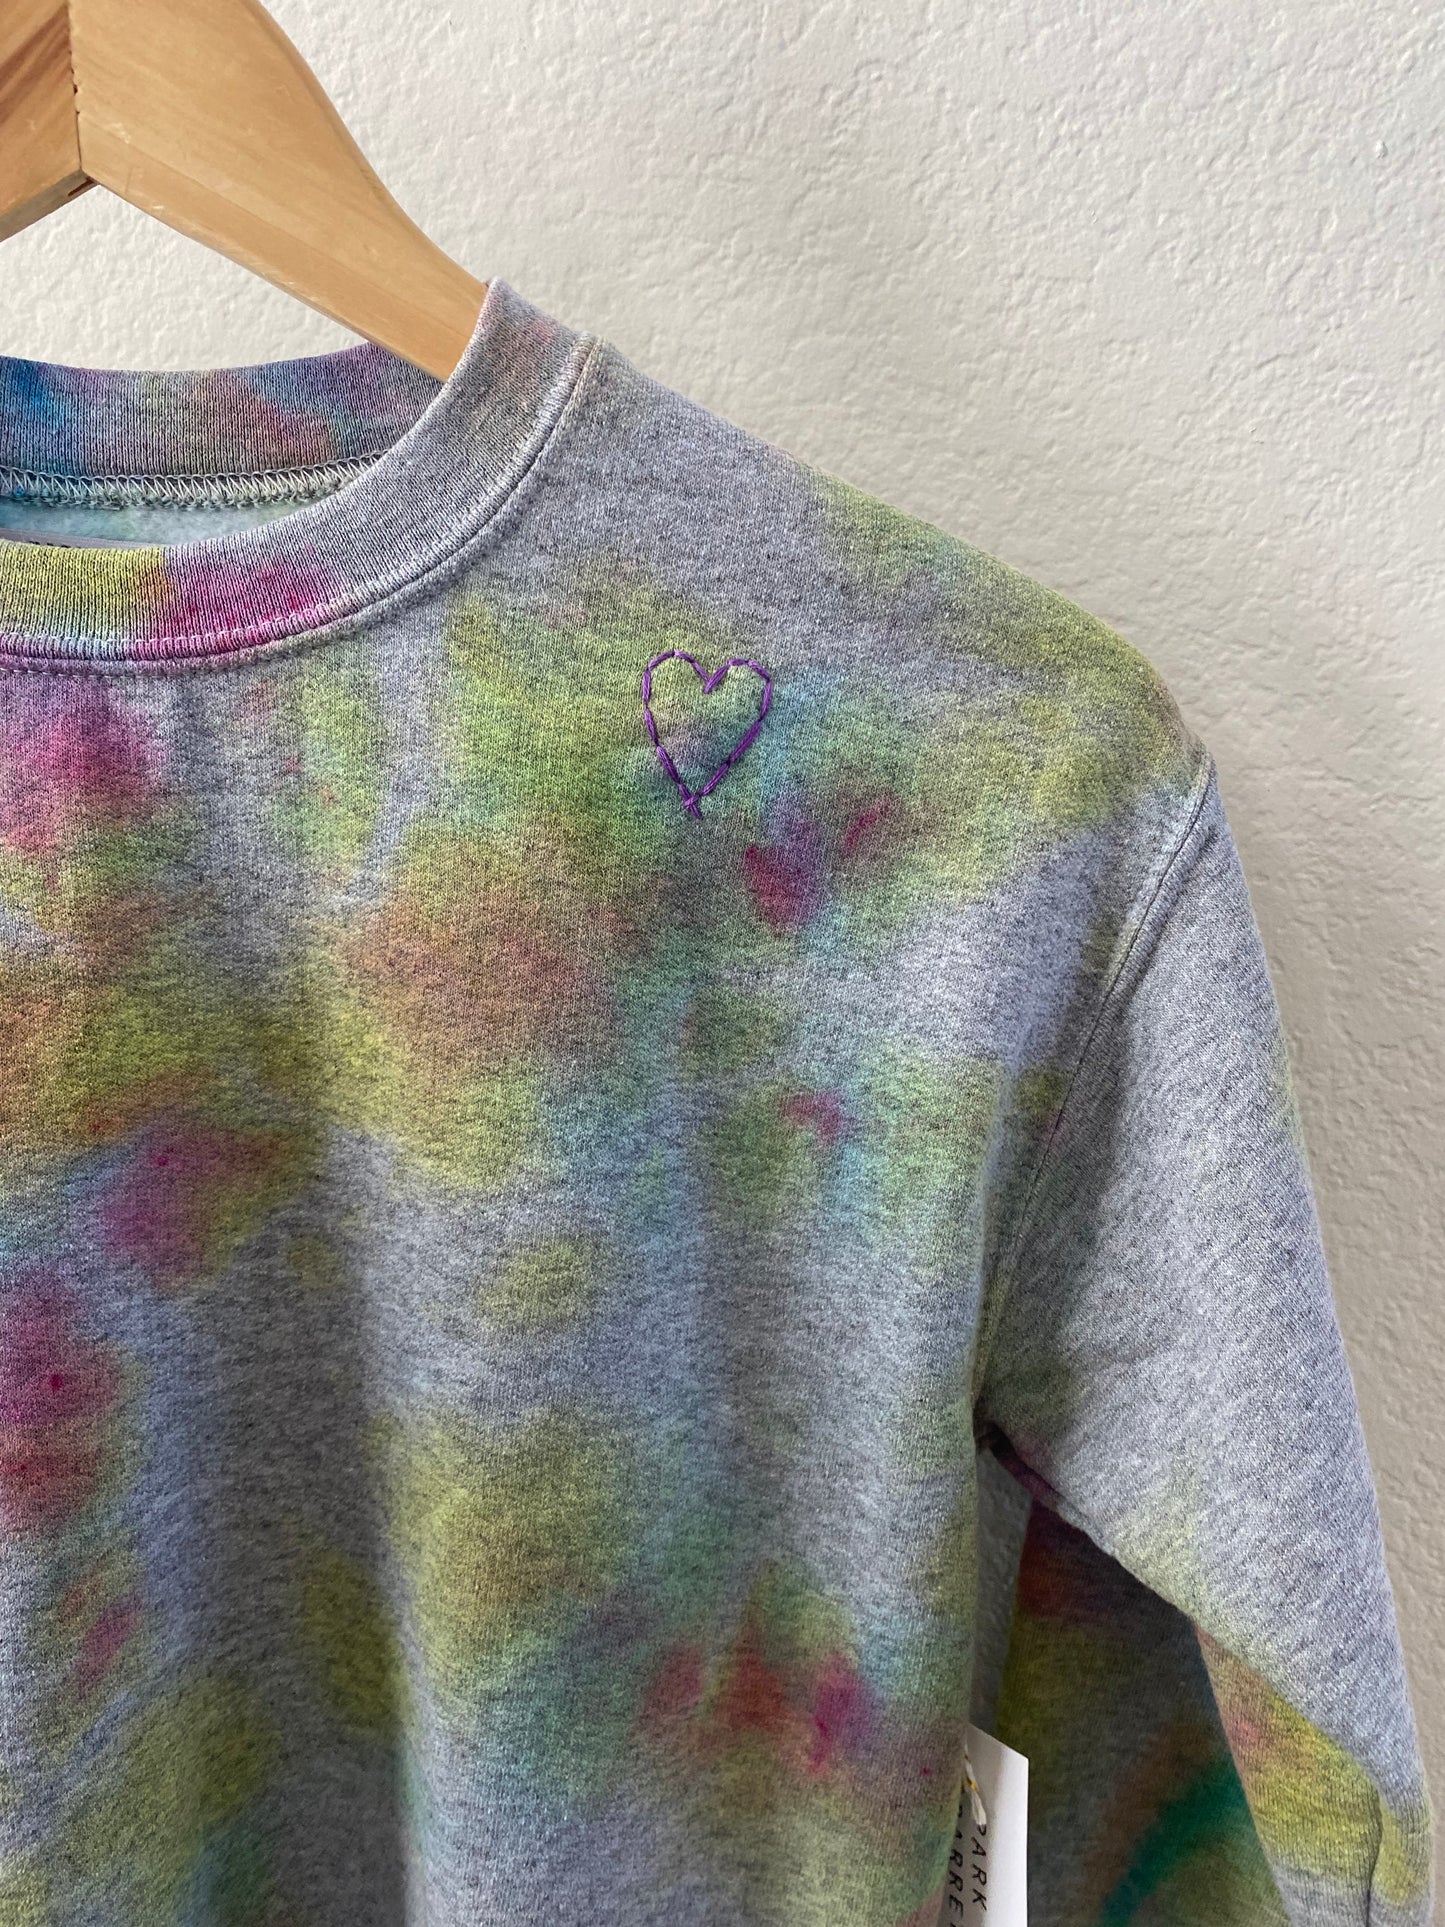 SALE- Kids Rainbow Sweatshirt size Medium